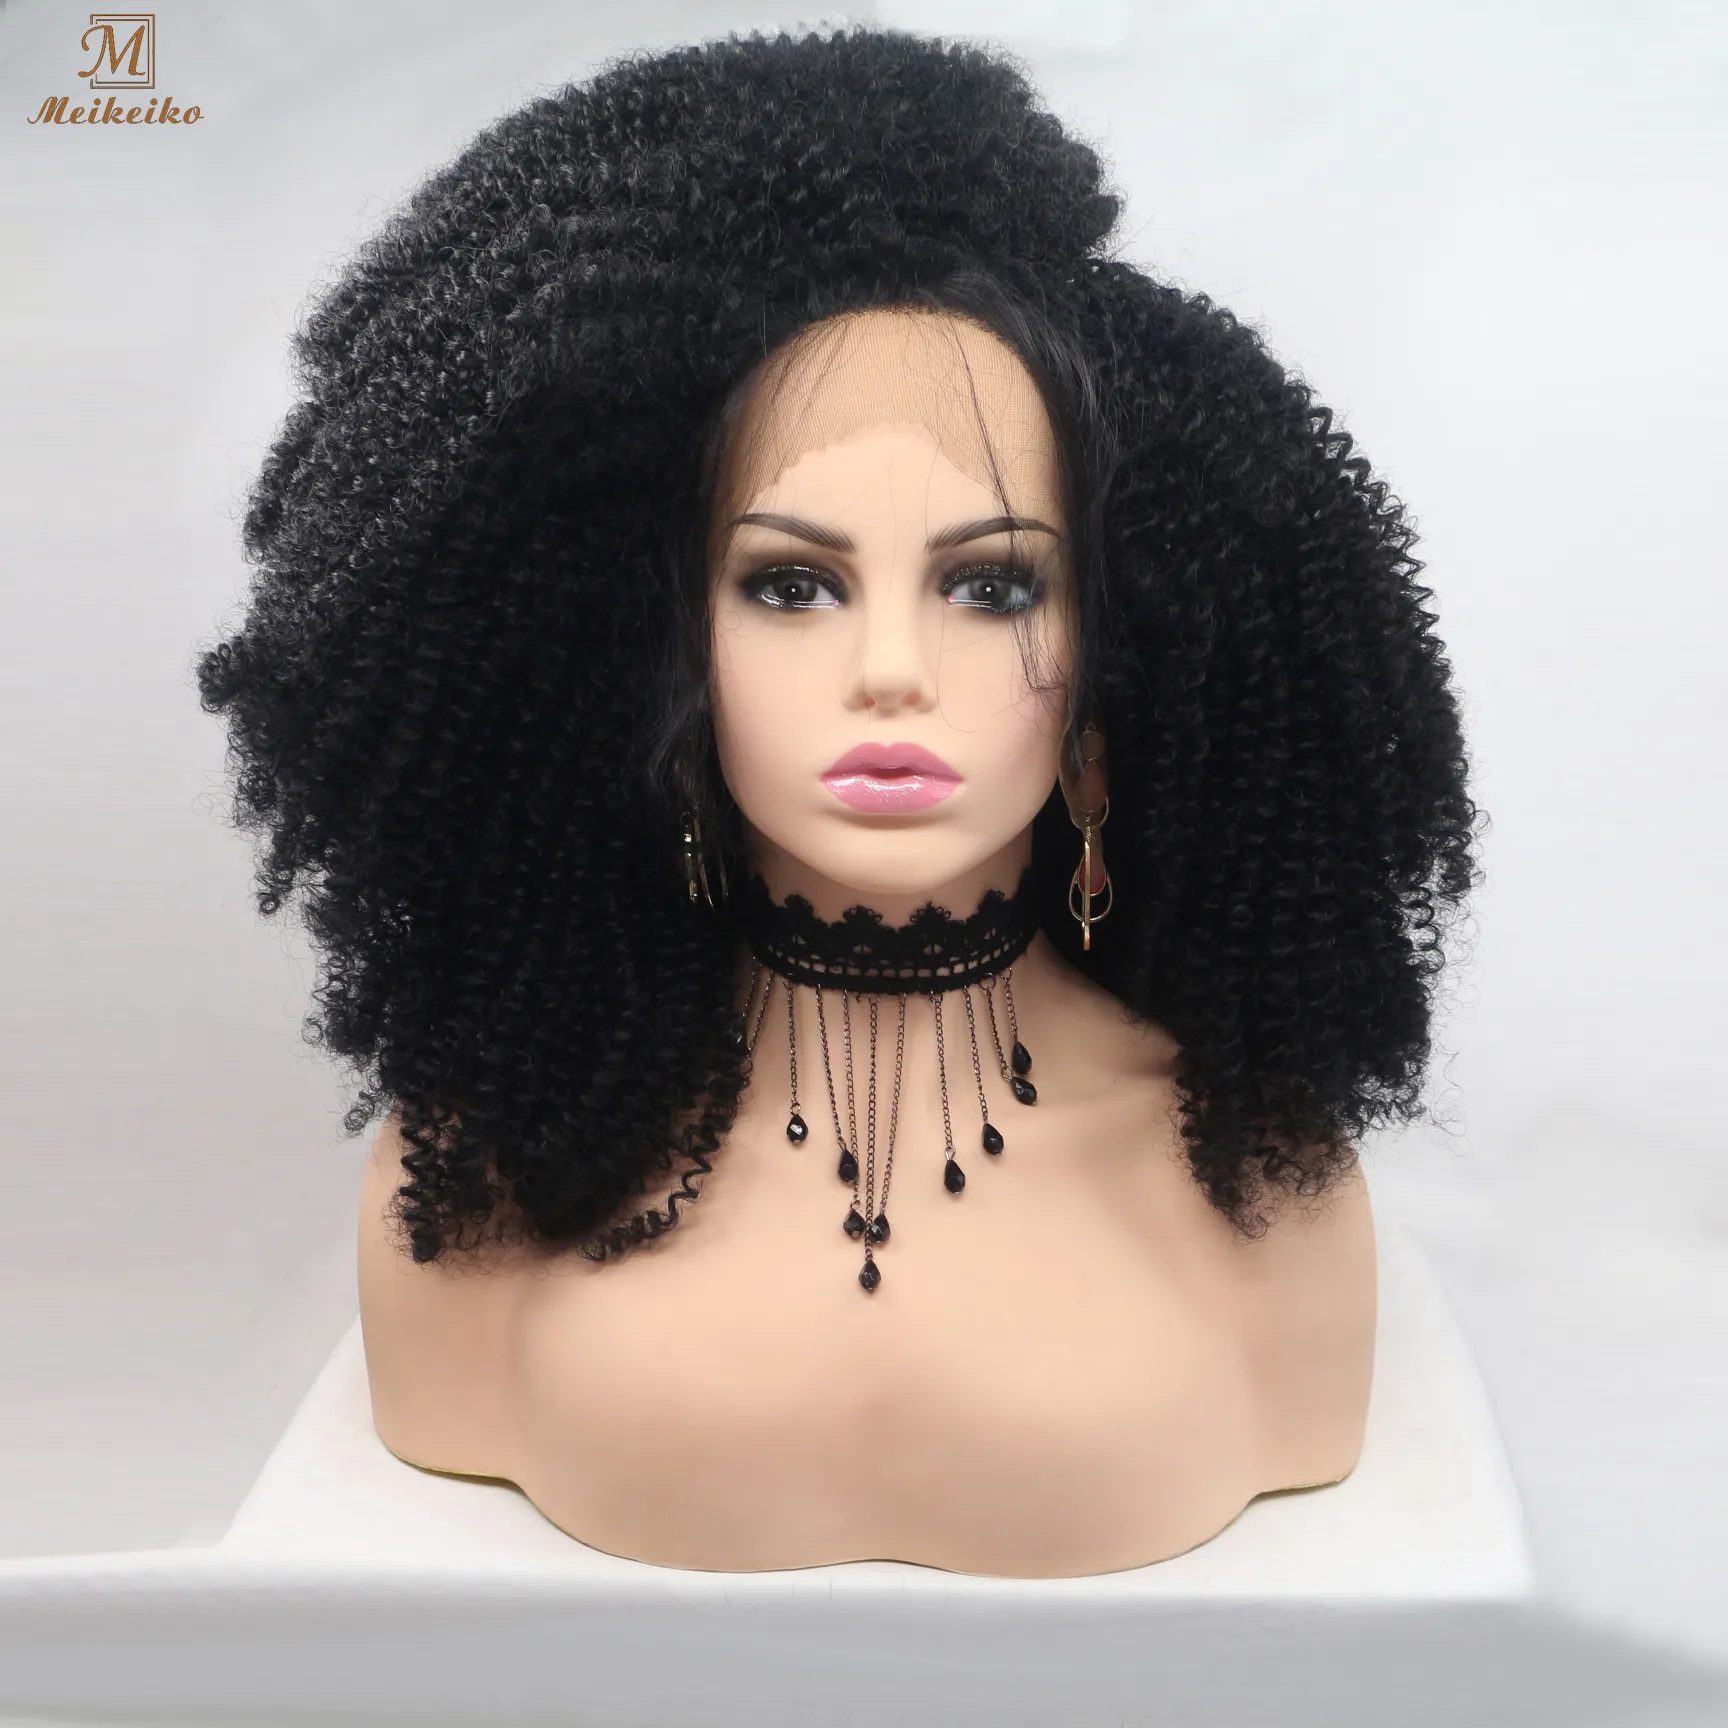 Perruque Afro synthétique crépue et bouclée noire, extension capillaire à fermeture frontale en dentelle sans colle, Drag Queen/Cosplay, pour femmes noires